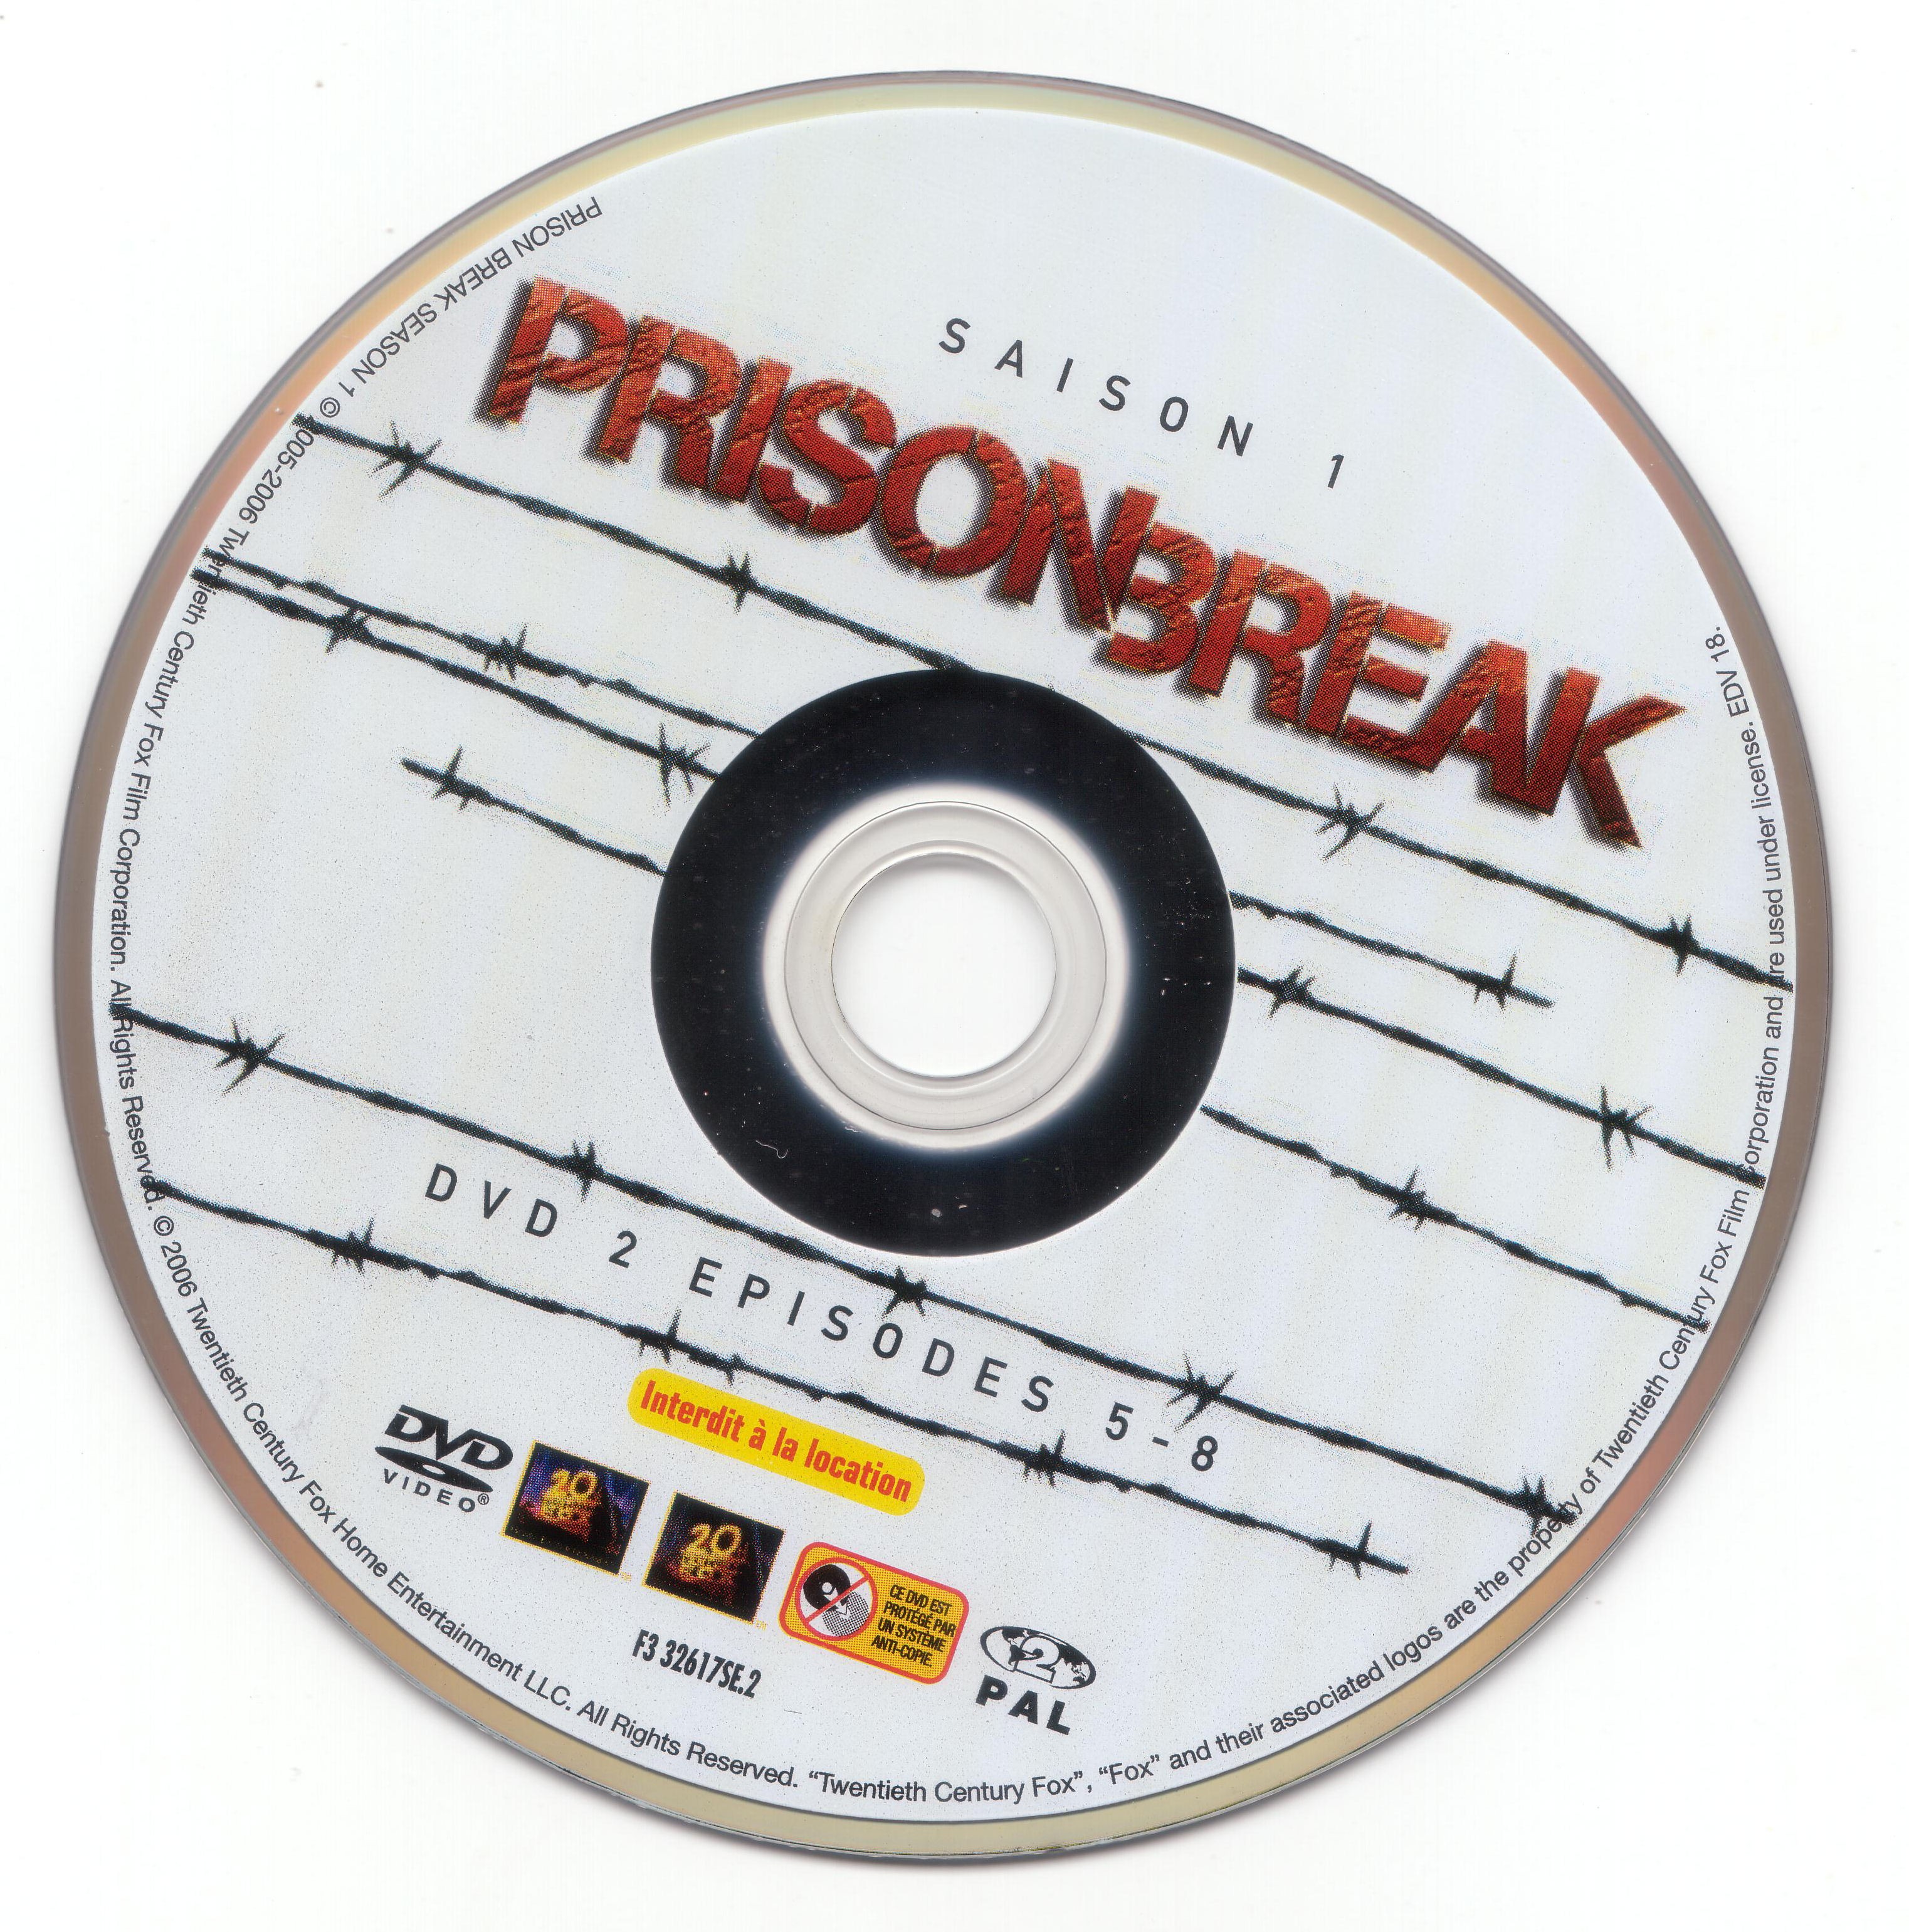 Prison break saison 1 dvd 2